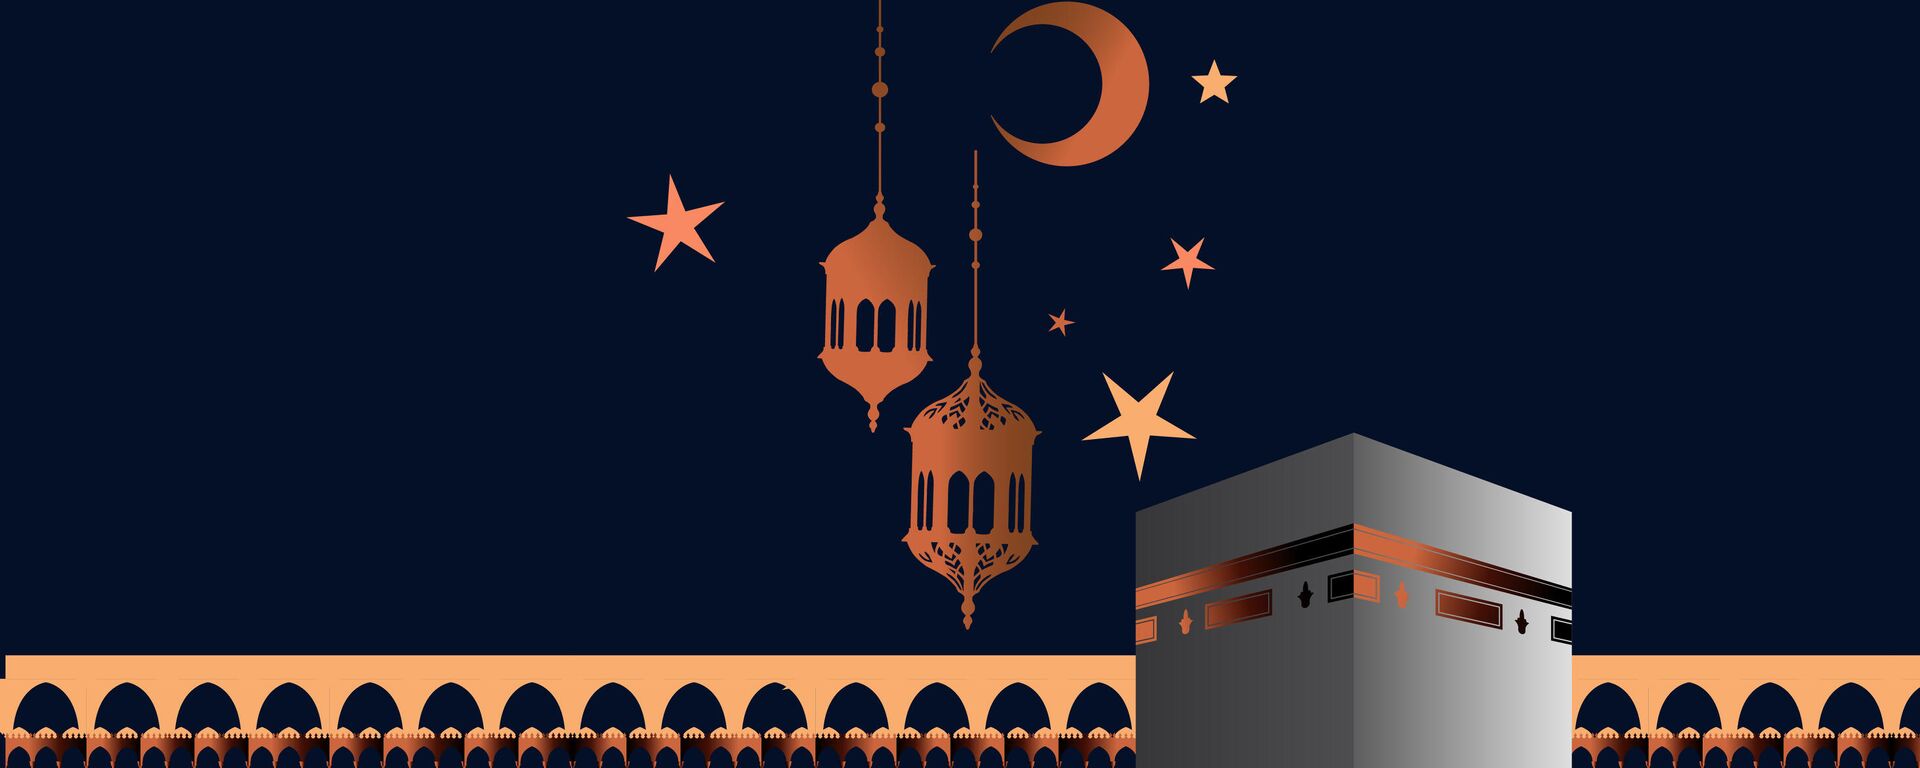 Мусульманский календарь - 2021 - Sputnik Таджикистан, 1920, 23.11.2020